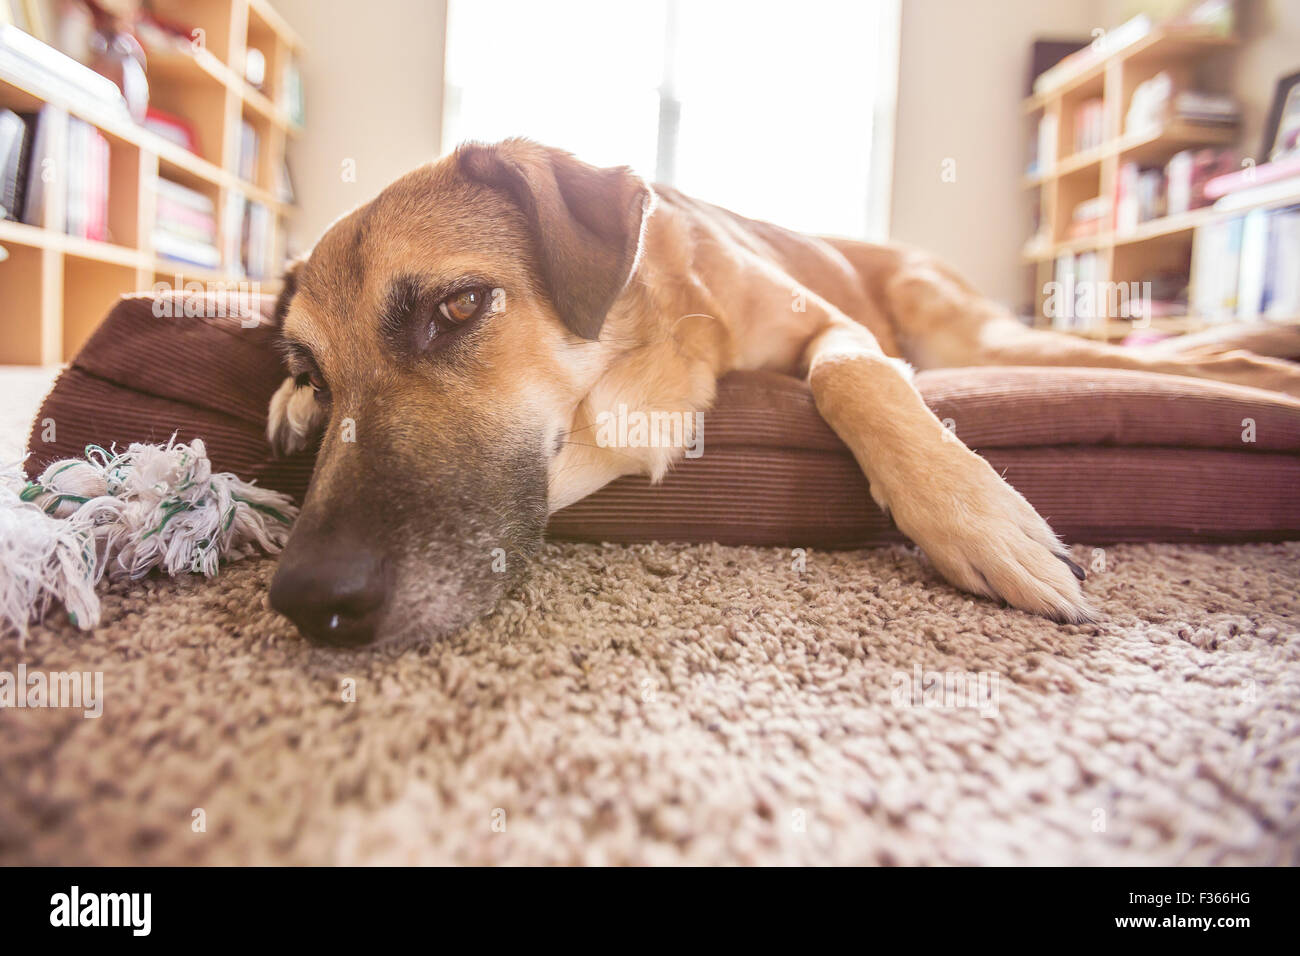 Grand chien chien allongée sur le lit dans une chambre Banque D'Images